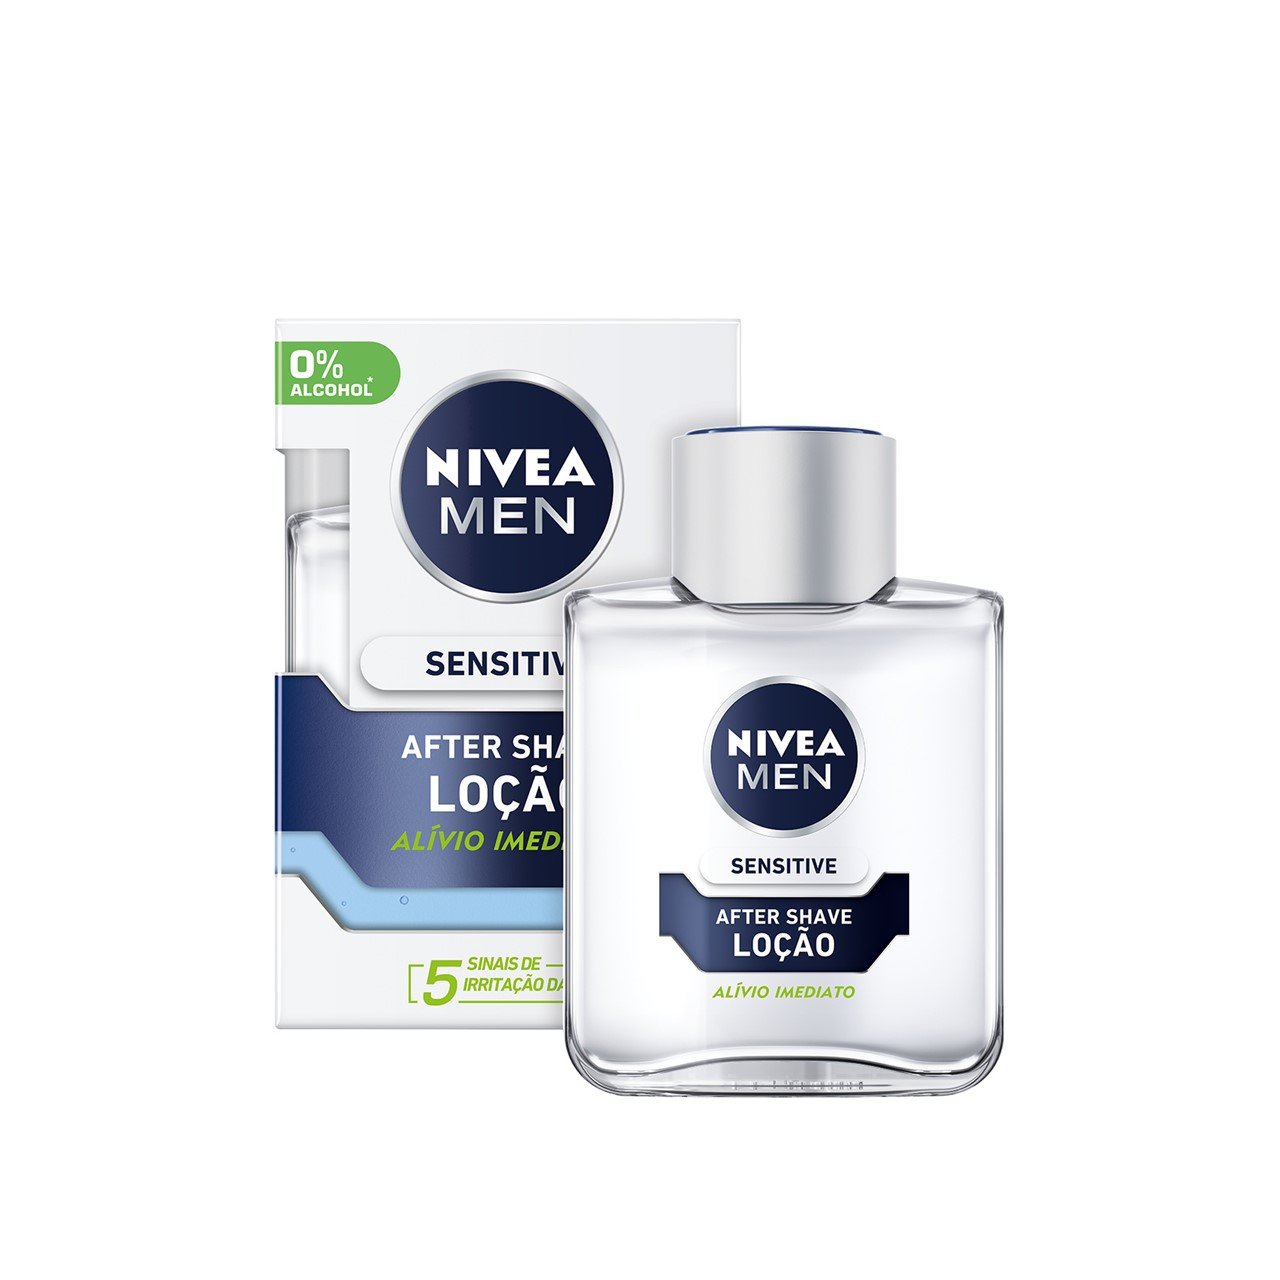 vandfald Bonus Er deprimeret Buy Nivea Men Sensitive After Shave Lotion 100ml (3.38fl oz) · USA